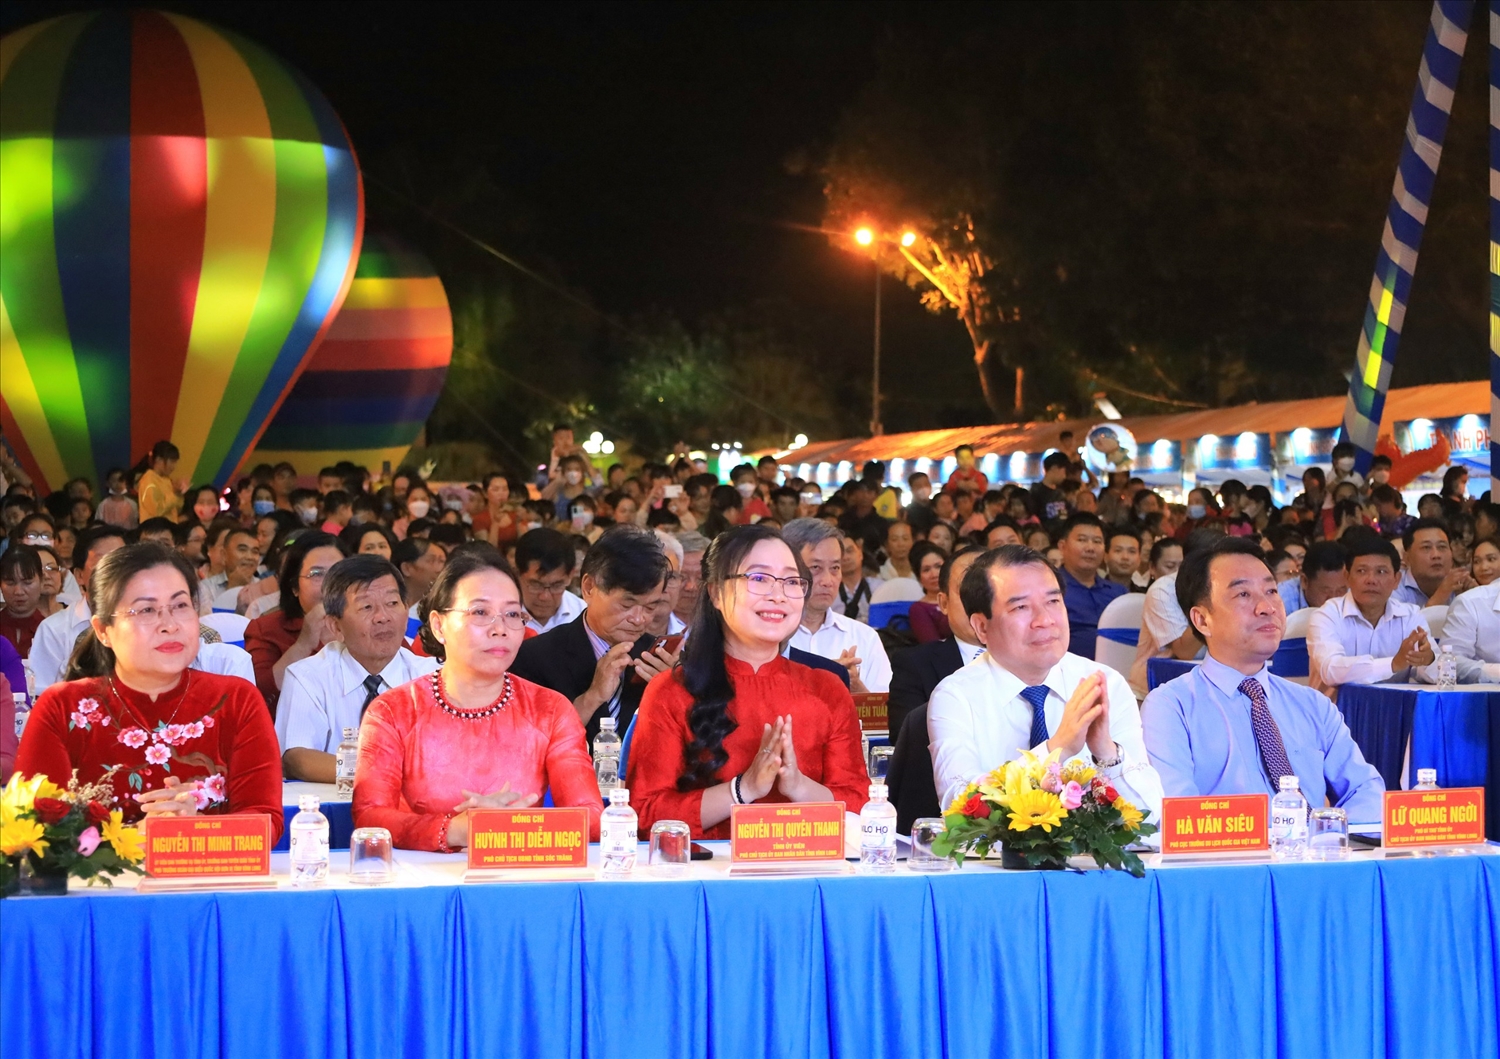 Ngày hội là sự kiện du lịch thường niên của tỉnh Vĩnh Long nhằm thực hiện thỏa thuận Chương trình liên kết hợp tác phát triển du lịch giữa TP. Hồ Chí Minh và 13 tỉnh, thành Đồng bằng sông Cửu Long